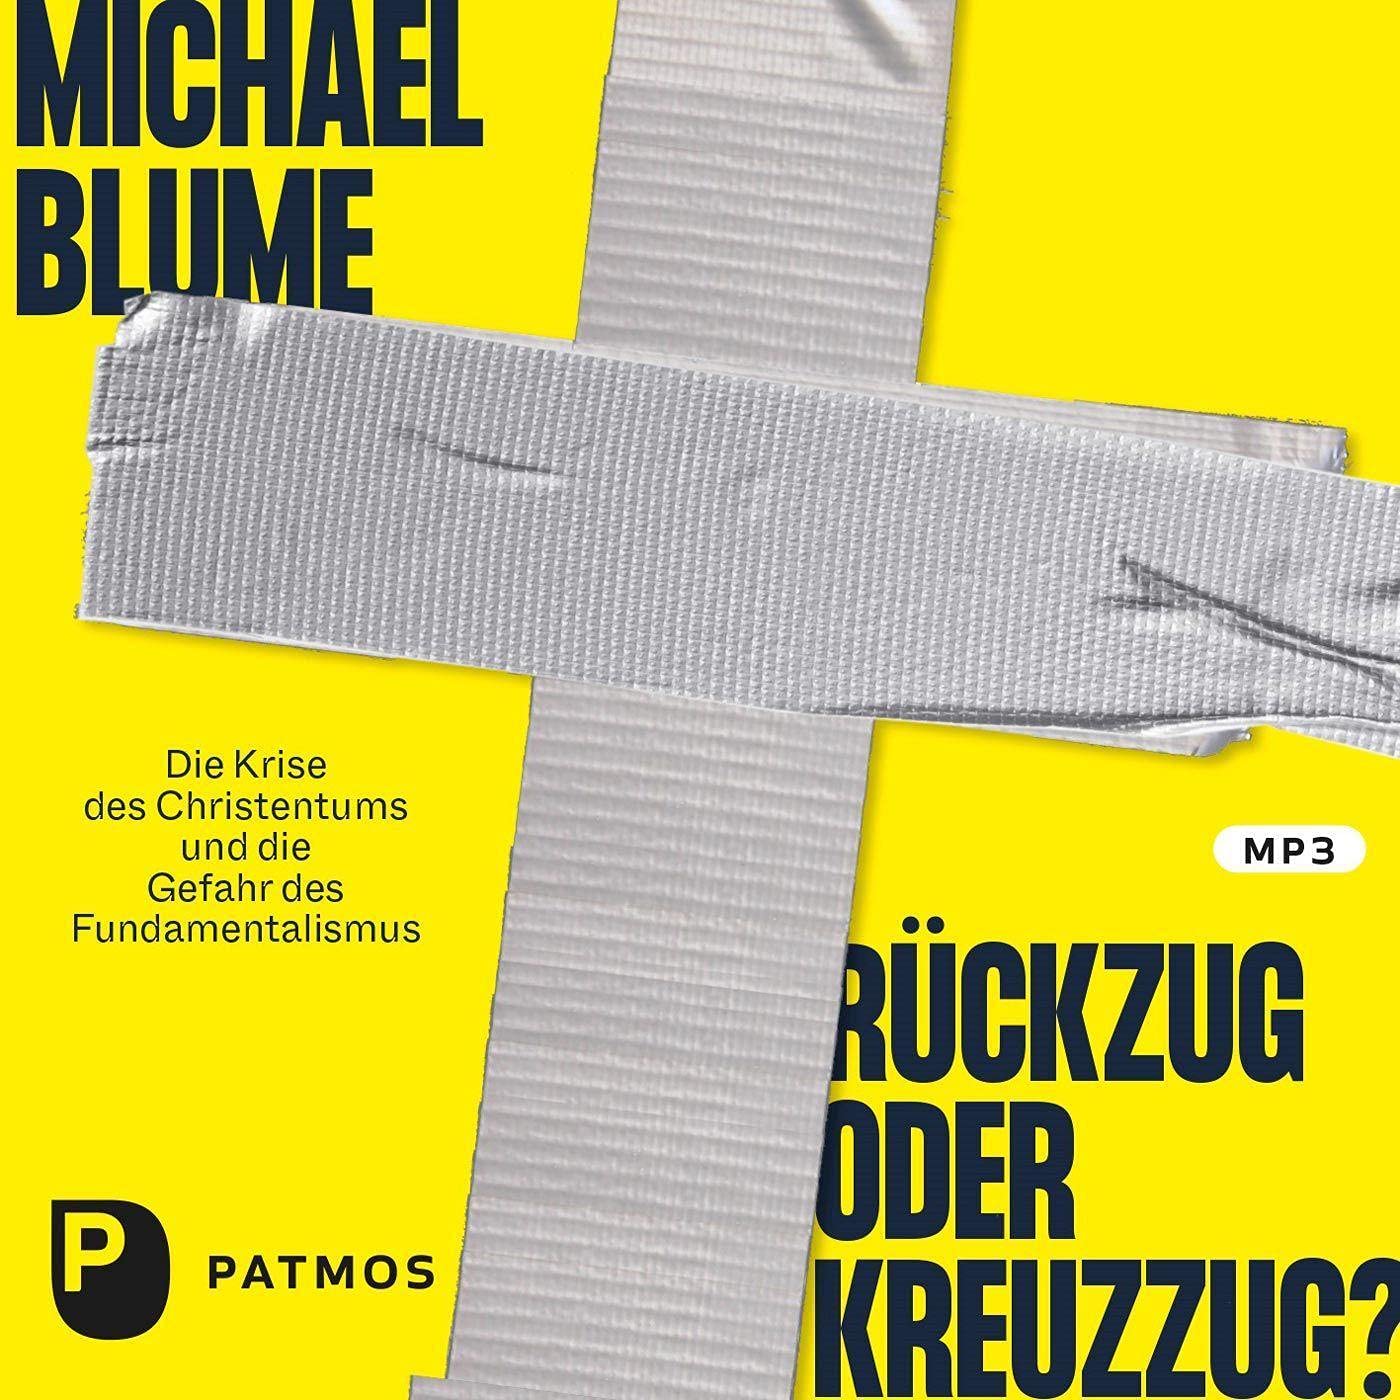 Michael Blume Rueckzug oder Kreuzzug - Buchbesprechungen